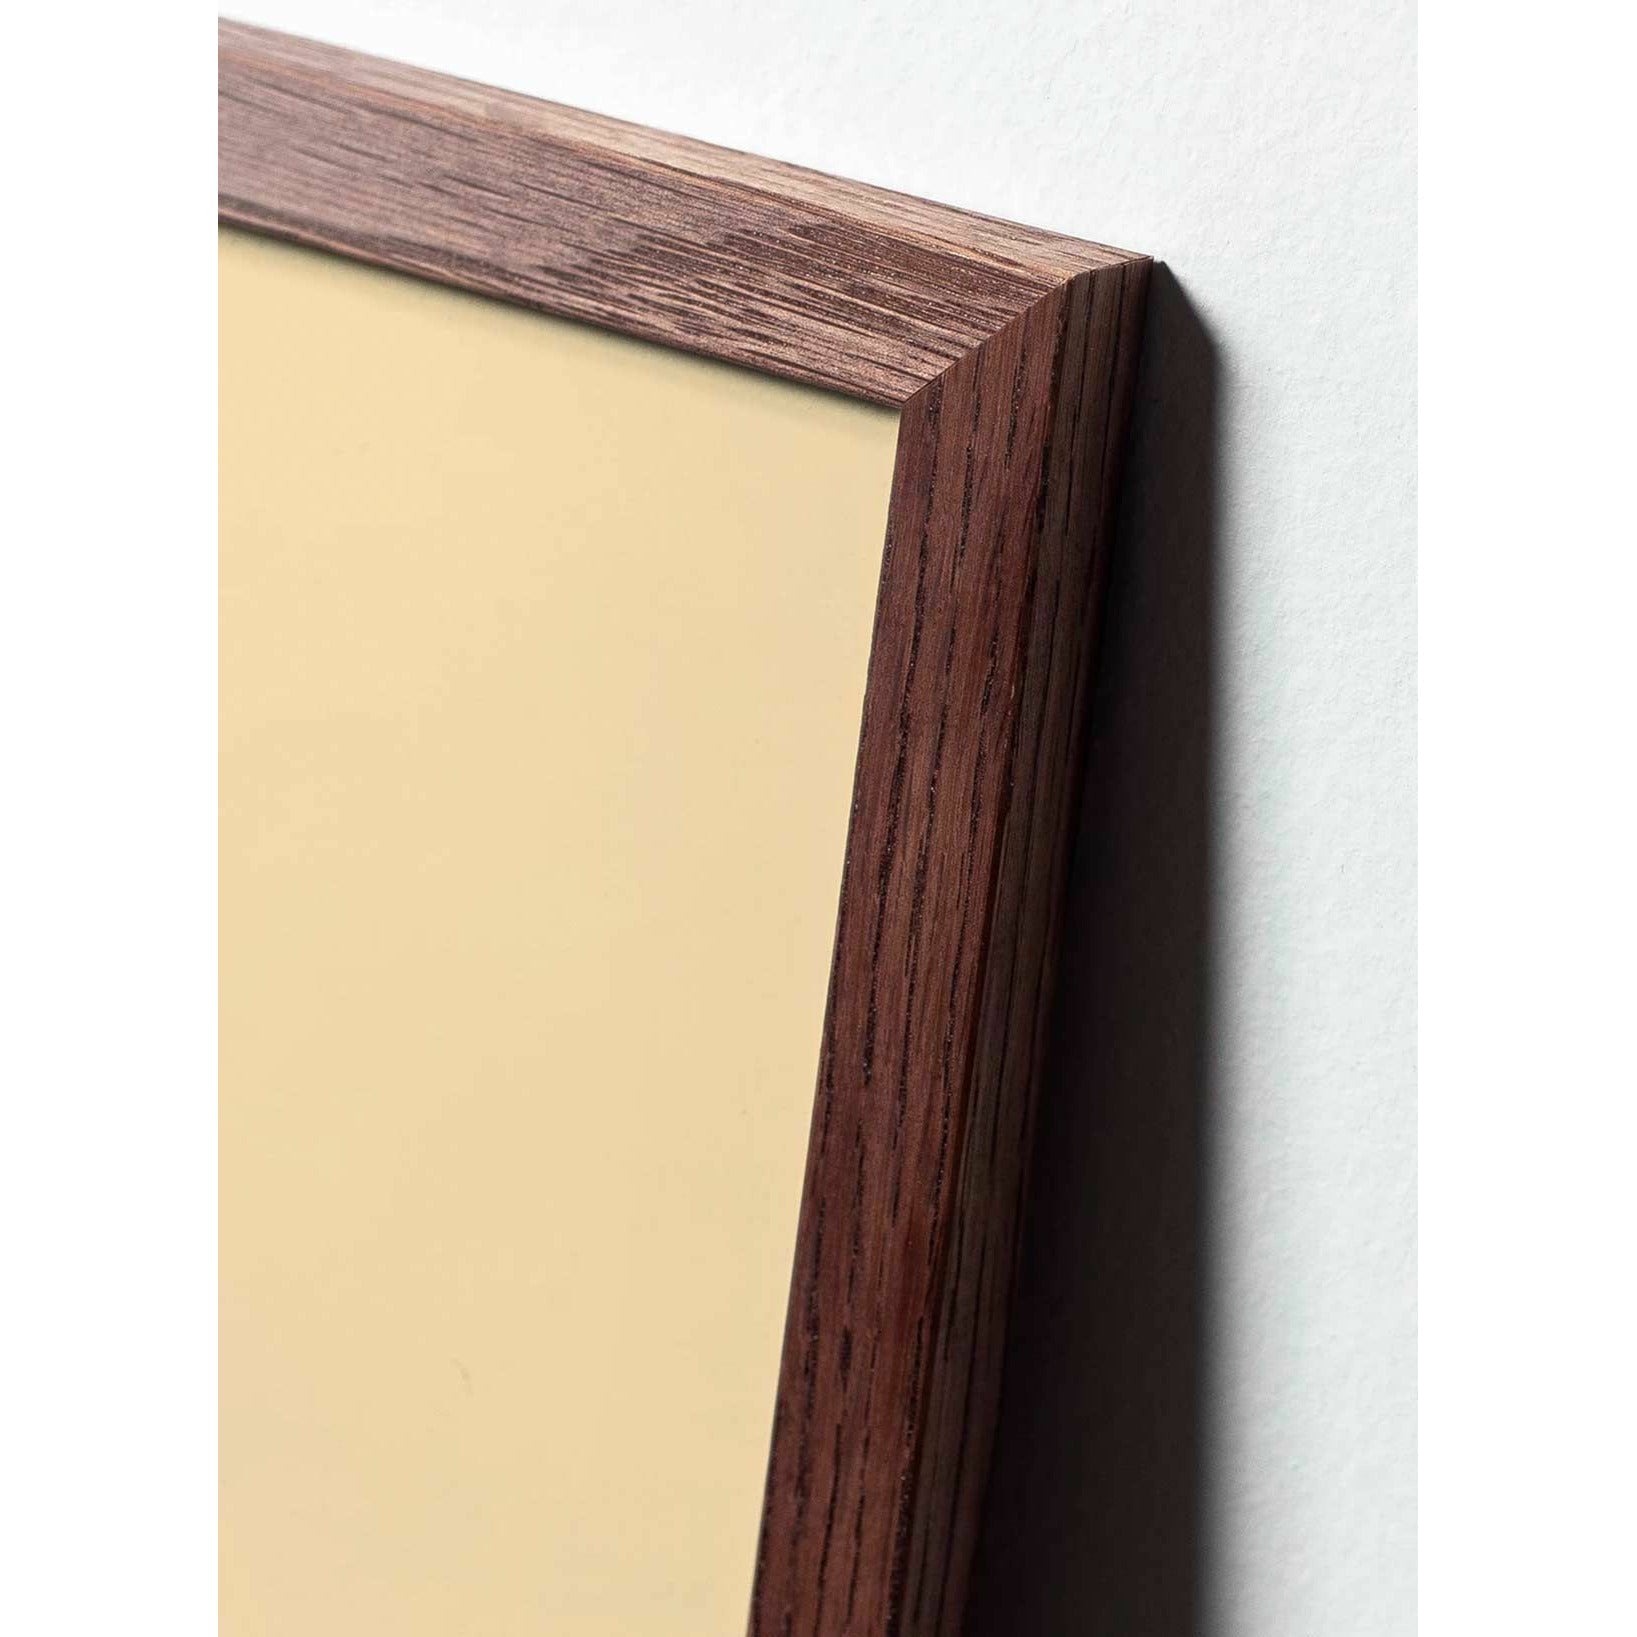 Póster de línea Swan de creación, marco hecho de madera oscura de 70x100 cm, fondo blanco